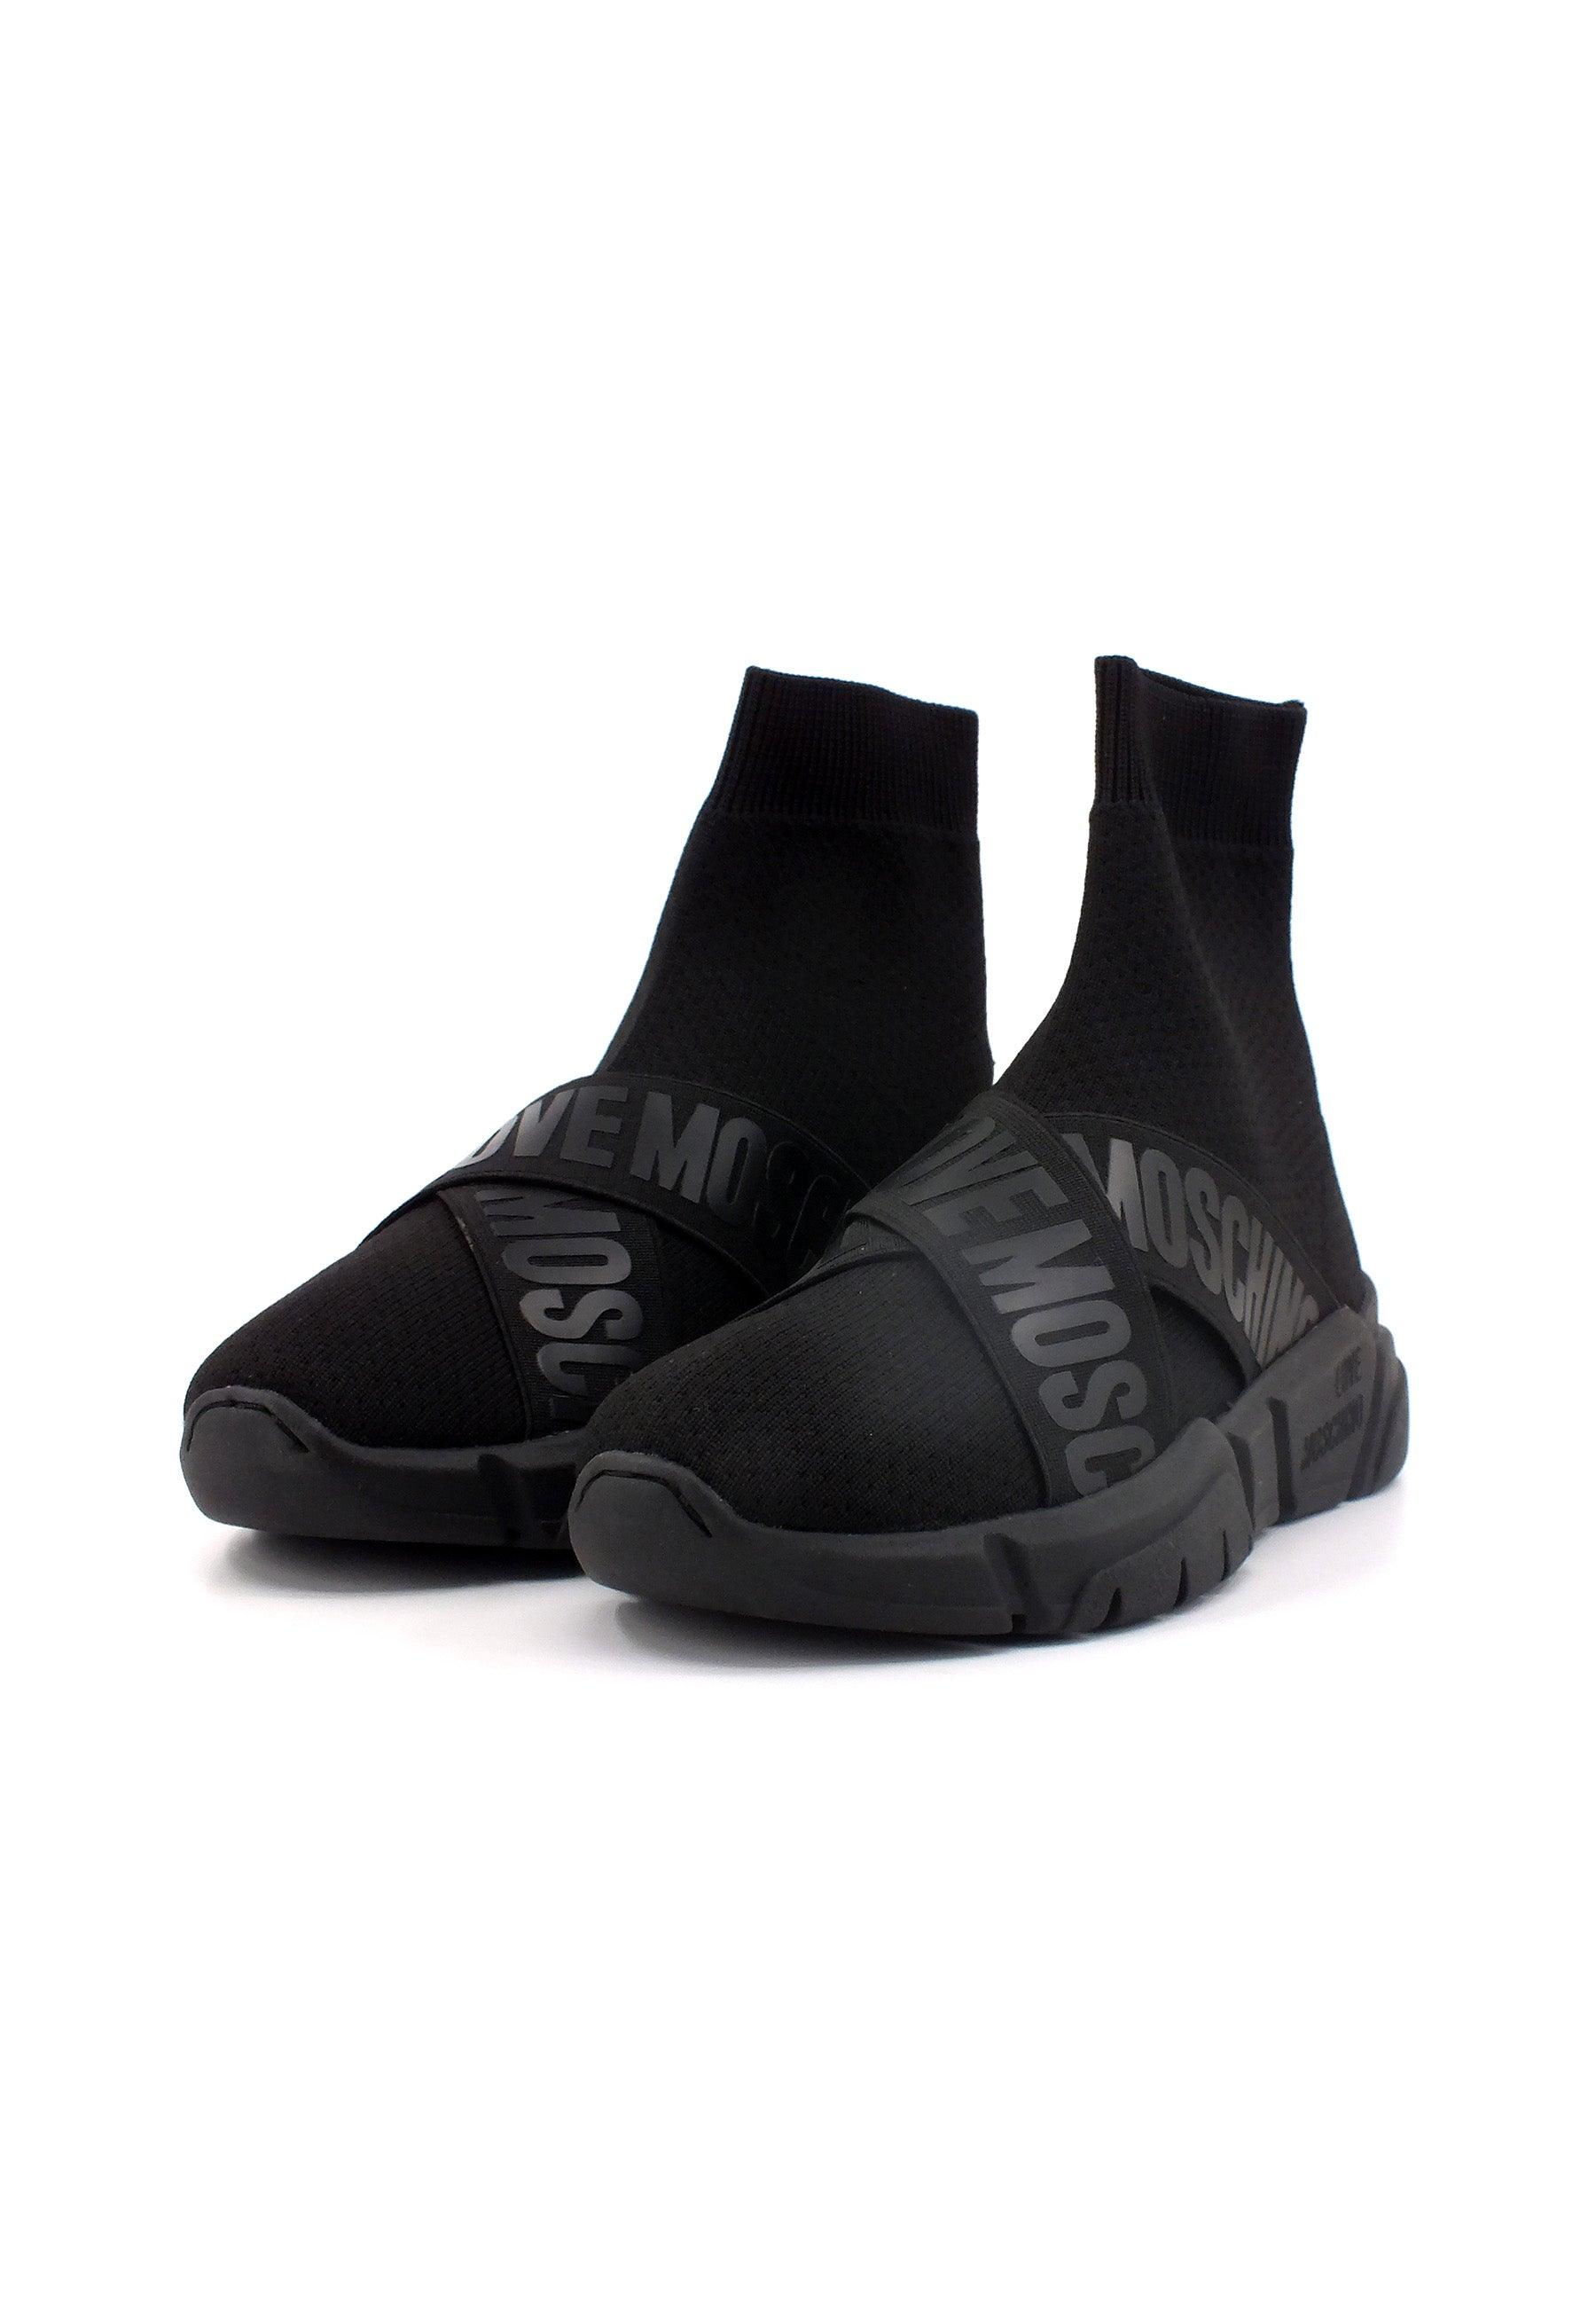 LOVE MOSCHINO Elastic Sock Sneaker Donna Nero JA15236G1HIZ500B - Sandrini Calzature e Abbigliamento